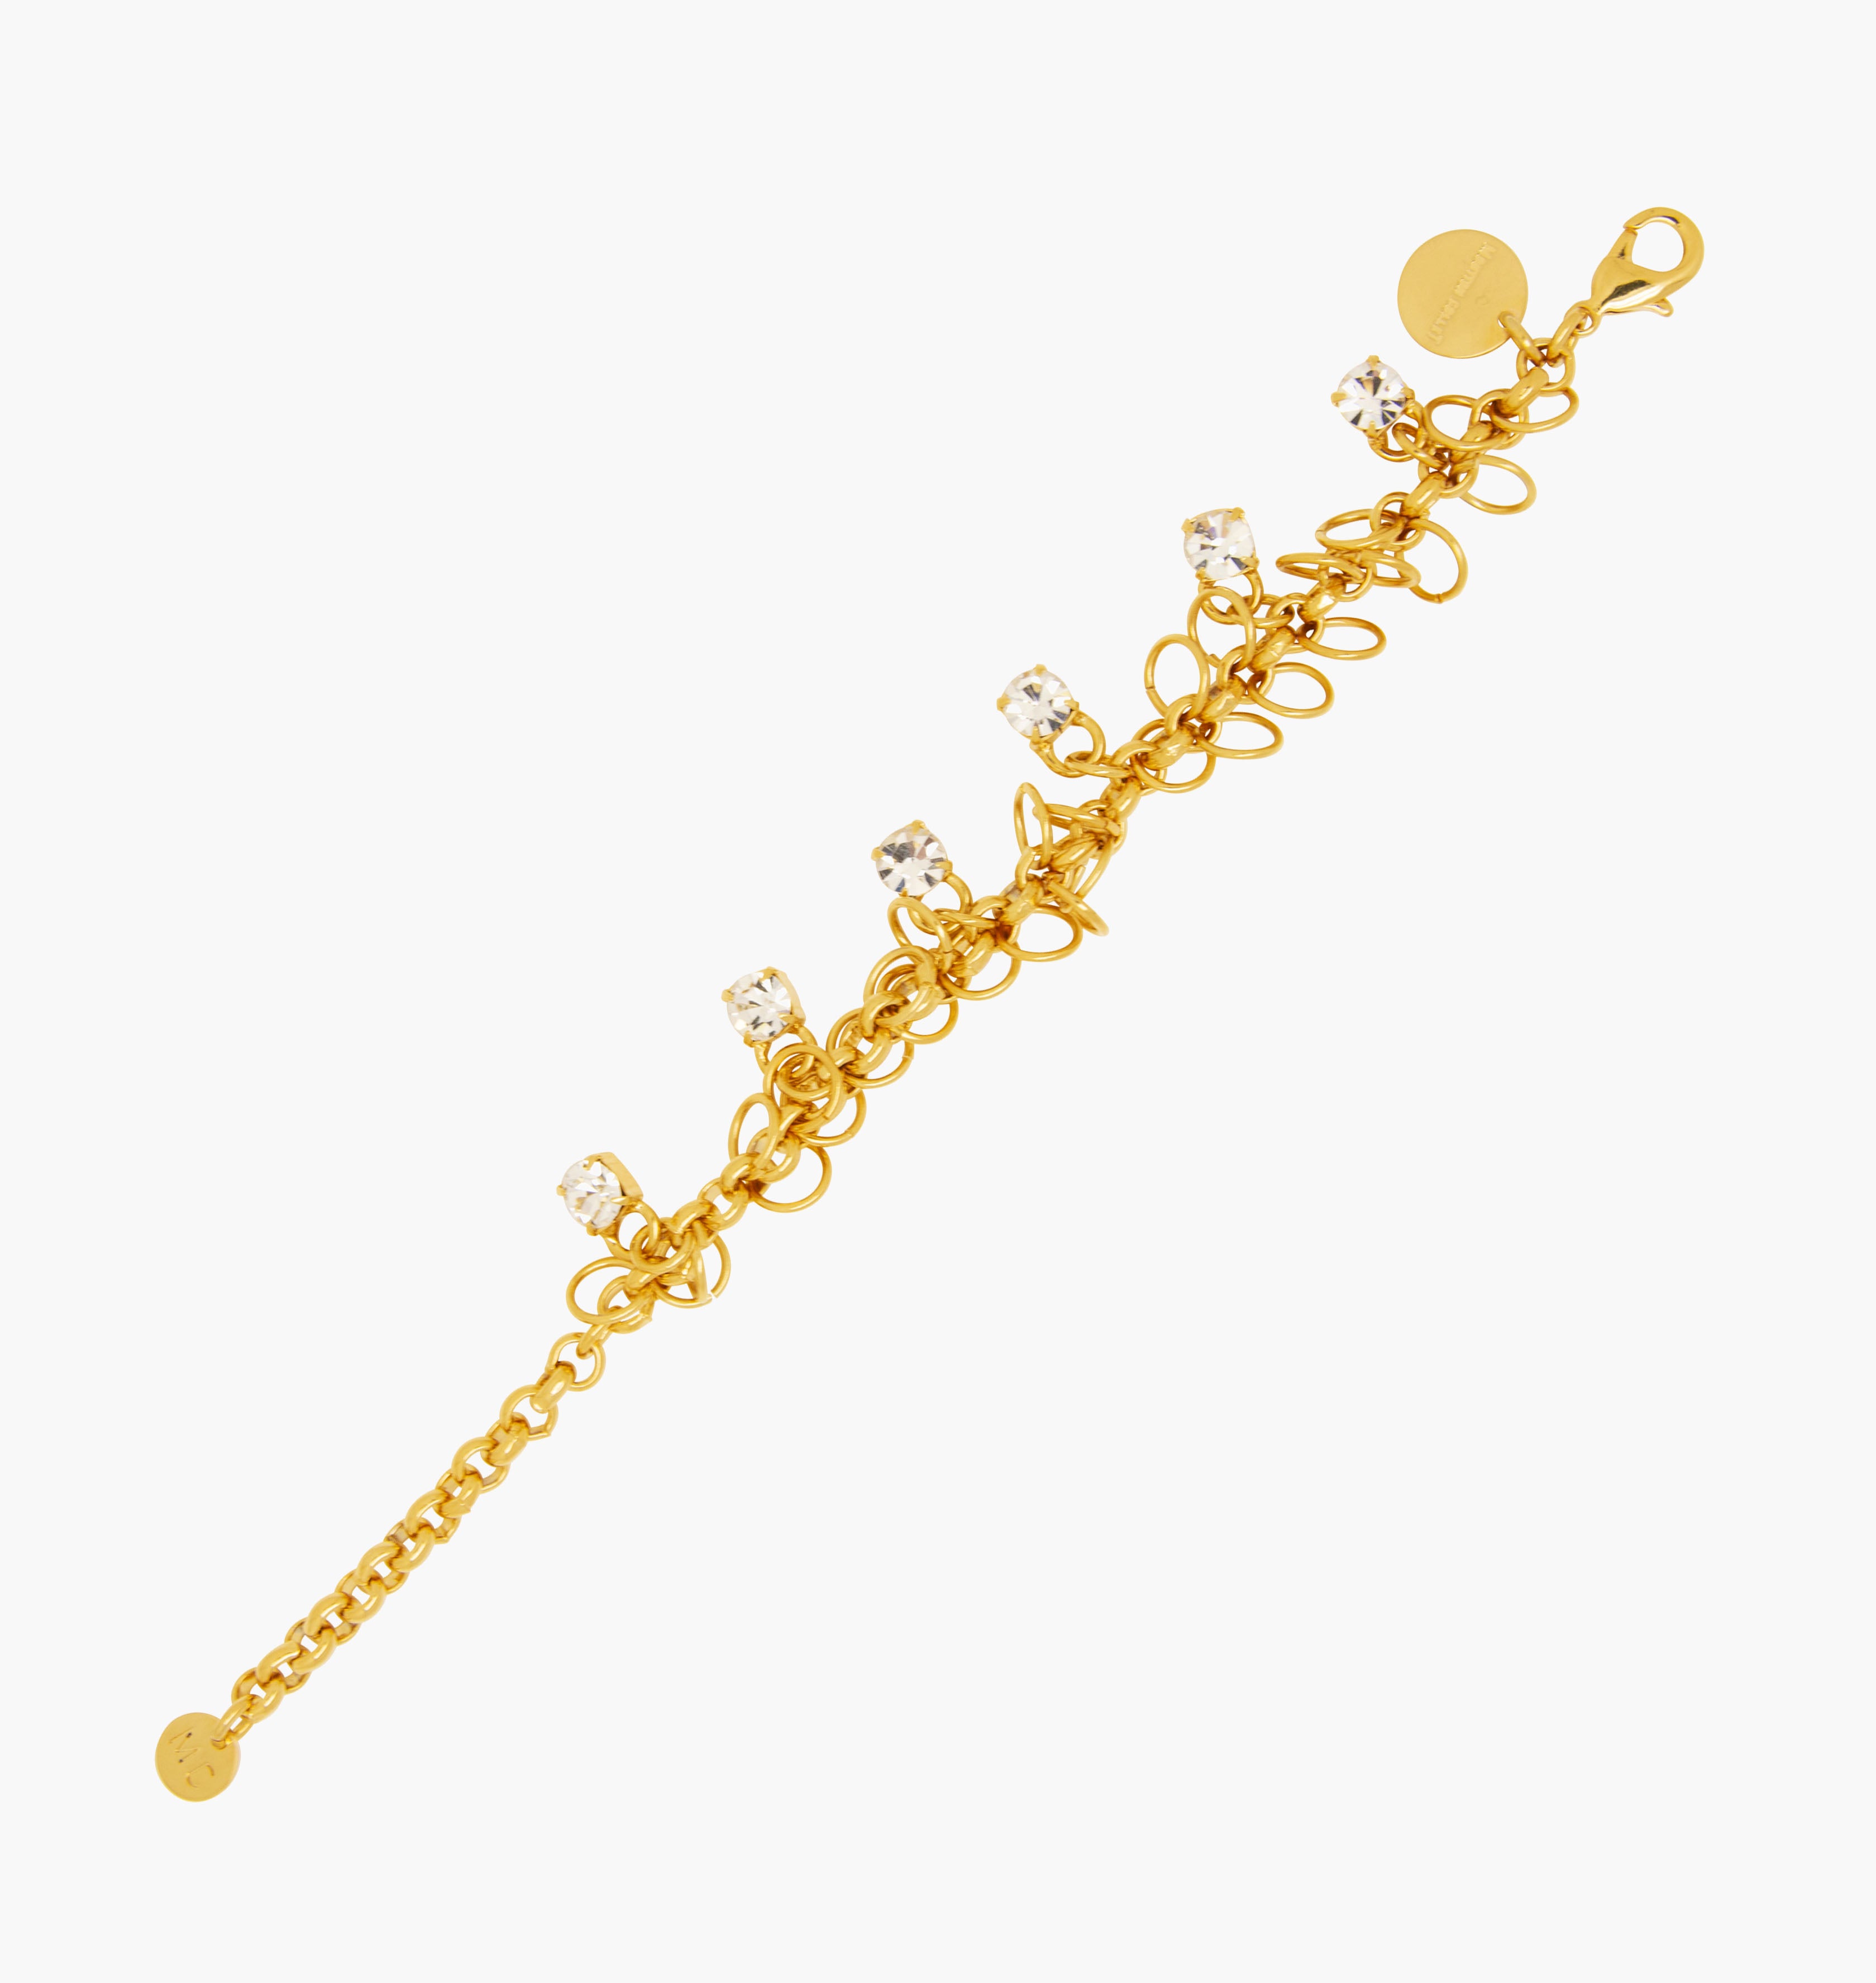 Bracelet STARS Crystal - shop.mouttoncollet.com, Moutton collet, Notre bracelet STARS est réalisé en bronze dorées à l'or fin, serties de cristaux scintillants coloris diamant avec de grands anneaux. Il est orné d'un médaillon gravé "Moutton colleT" et d'un petit logo gravé "MC". Il sera assez discret pour être associé à vos tenues du quotidien, strass cristal swarovski, bijou createur, bijoux vogue, bijoux fantaisie, bracelet strass brillant,